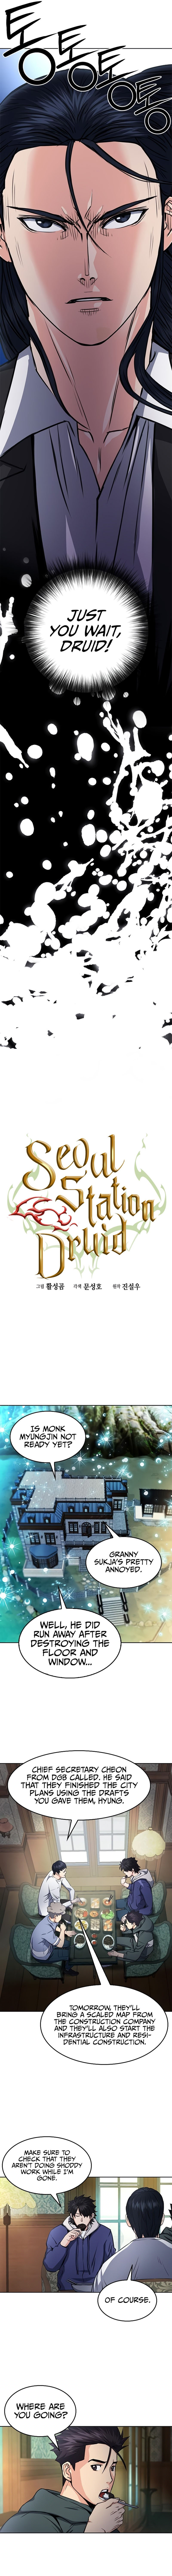 seoul-station-druid-chap-56-2